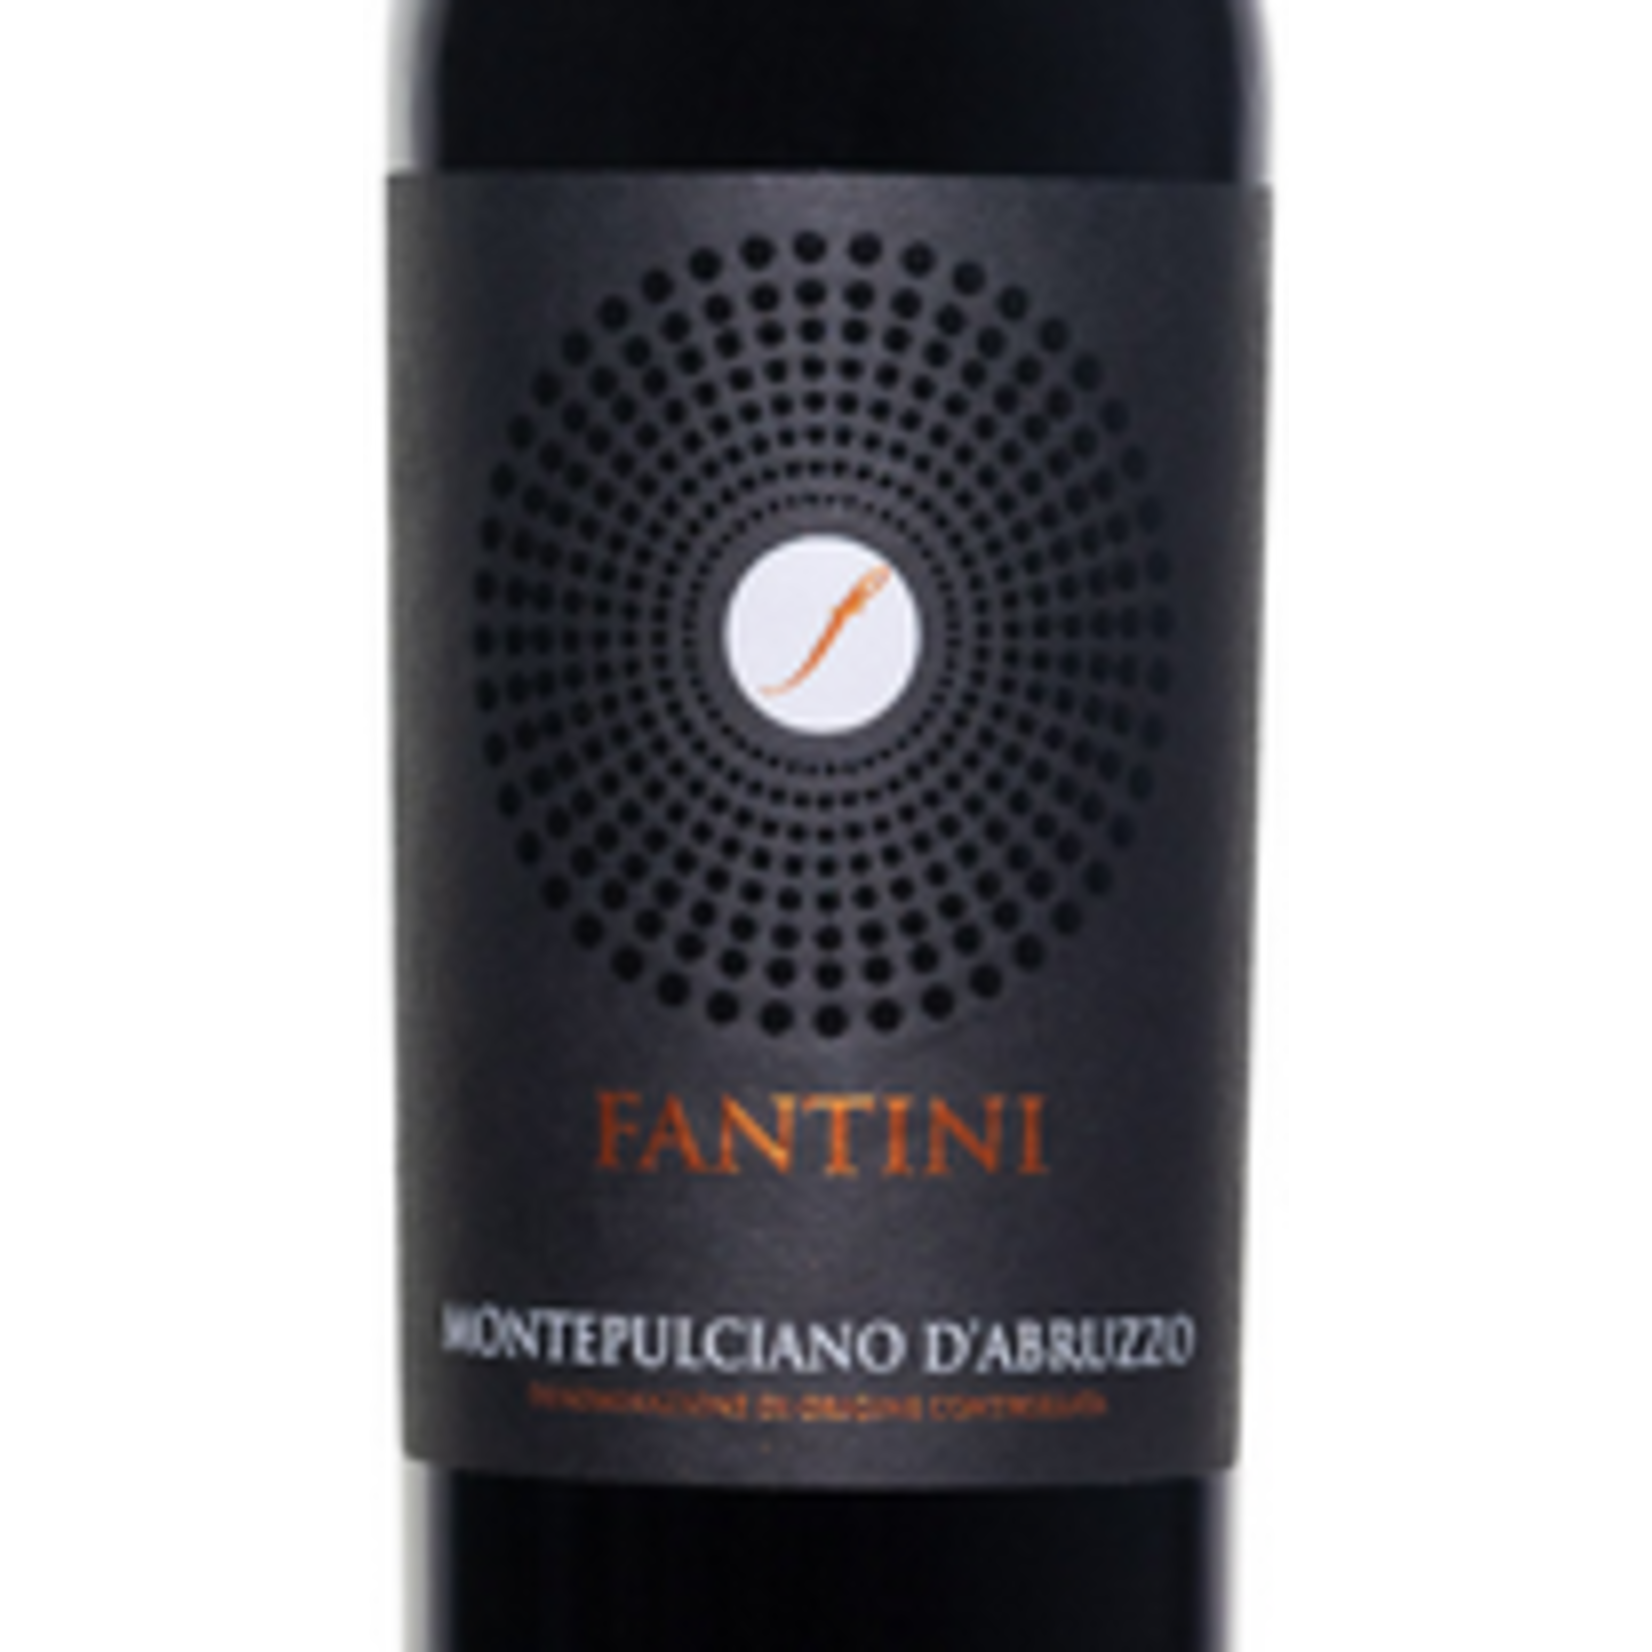 Fantini Fantini (Farnese) Montepulciano D'Abruzzo 2020 Puglia, Italy